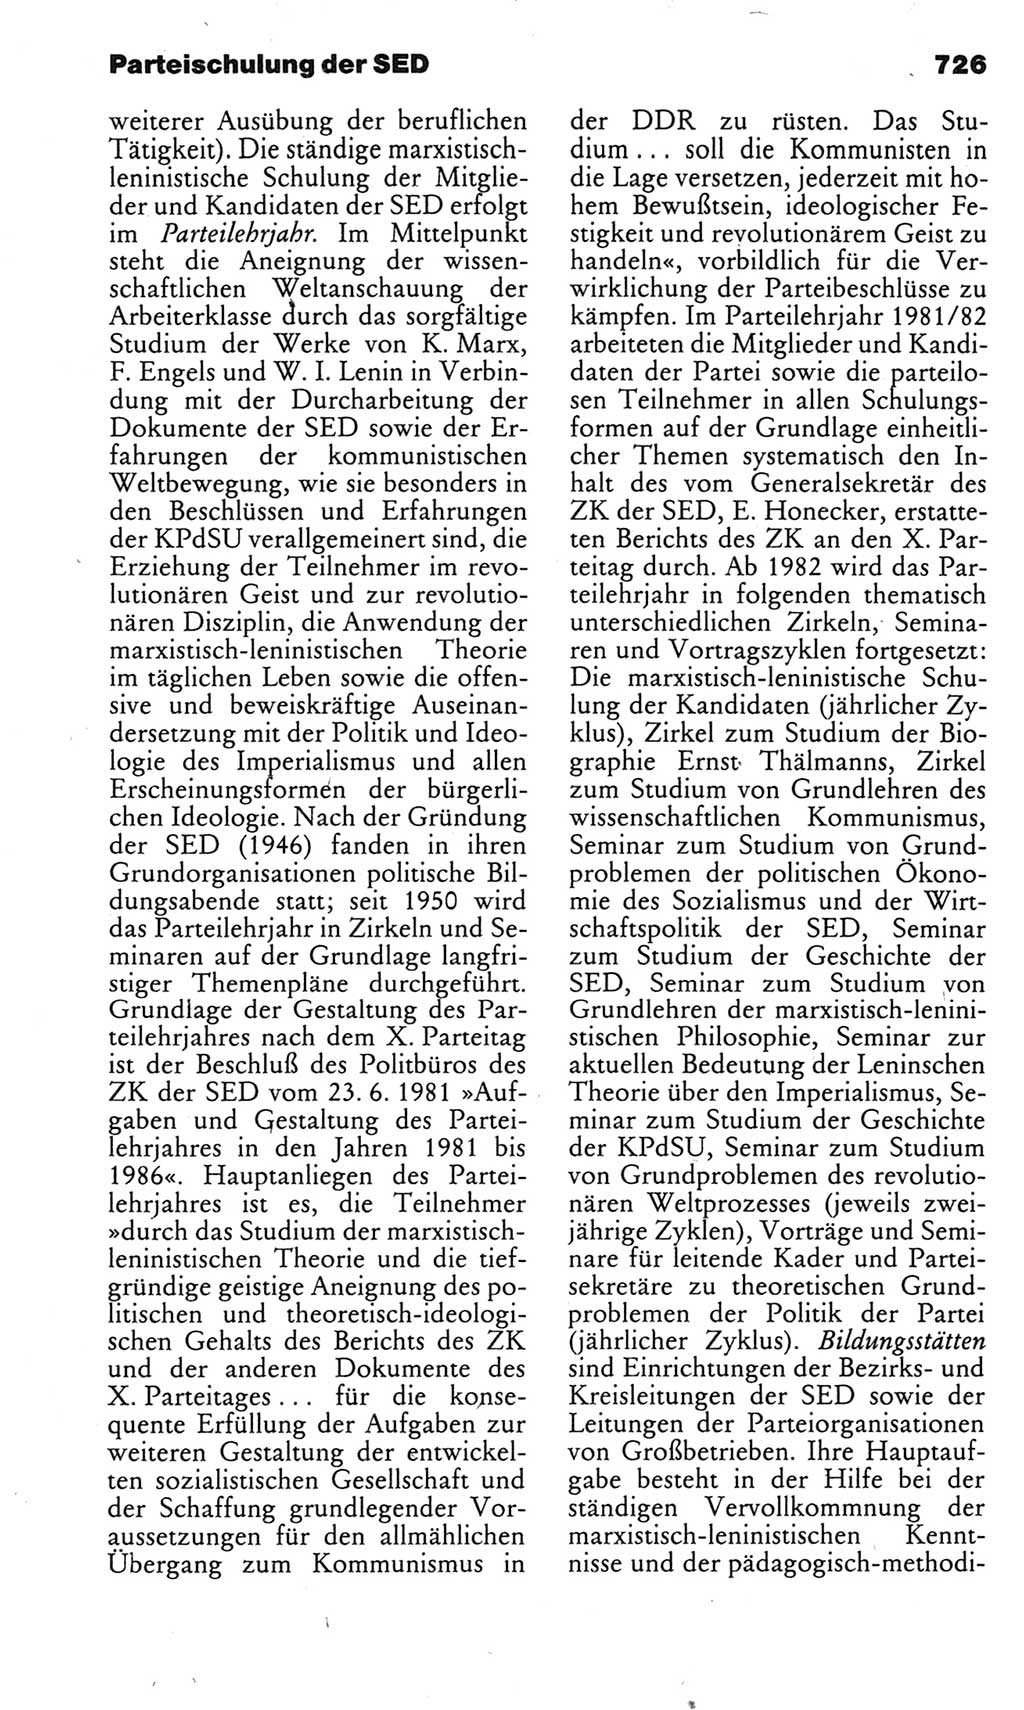 Kleines politisches Wörterbuch [Deutsche Demokratische Republik (DDR)] 1983, Seite 726 (Kl. pol. Wb. DDR 1983, S. 726)